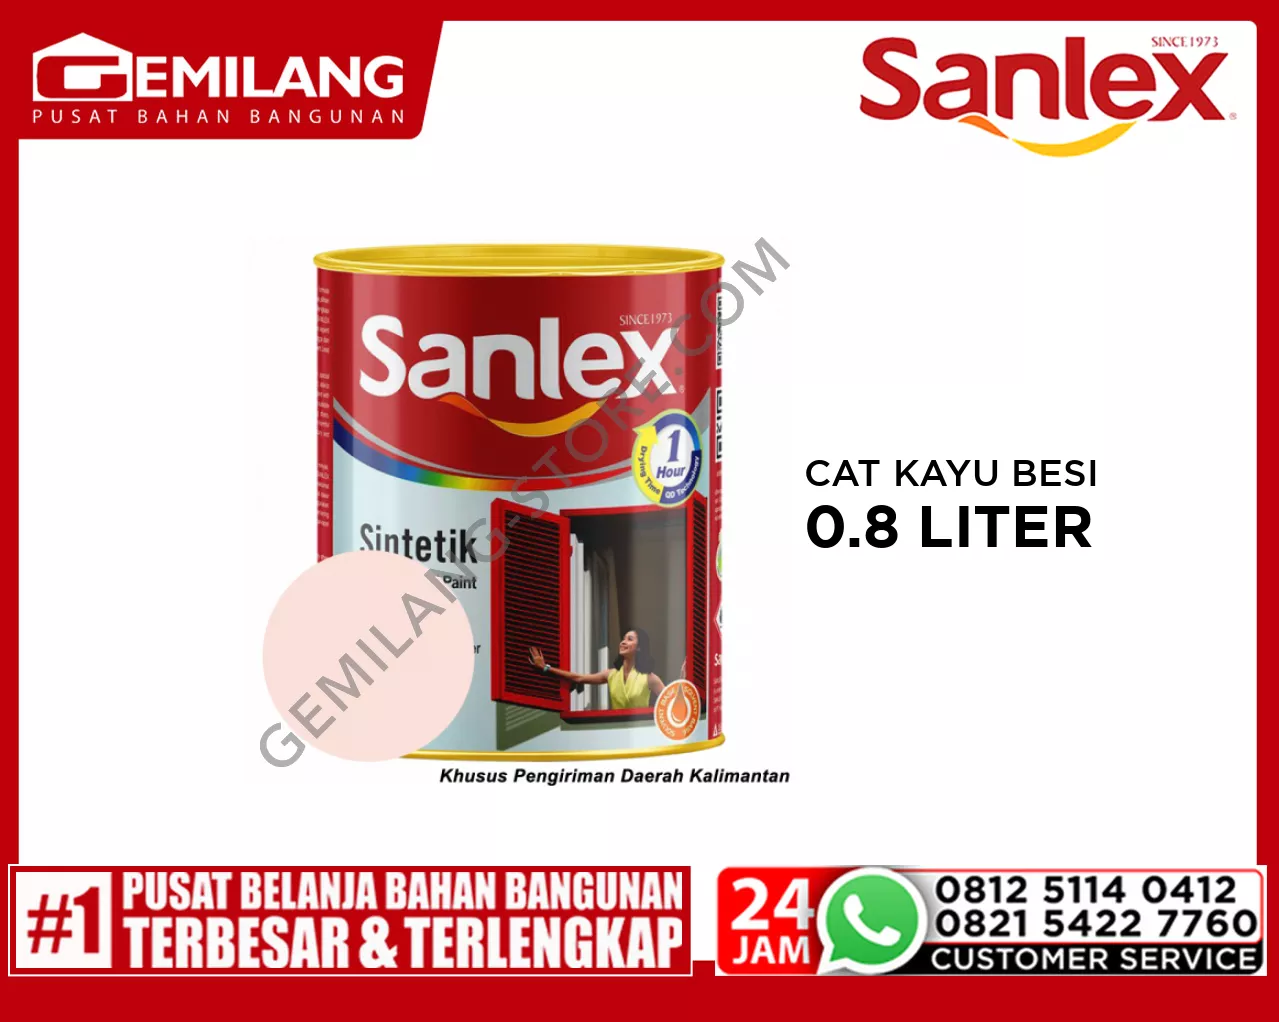 SANLEX PRODIGIO CAT K.BESI 6400 ROSE 0.8ltr